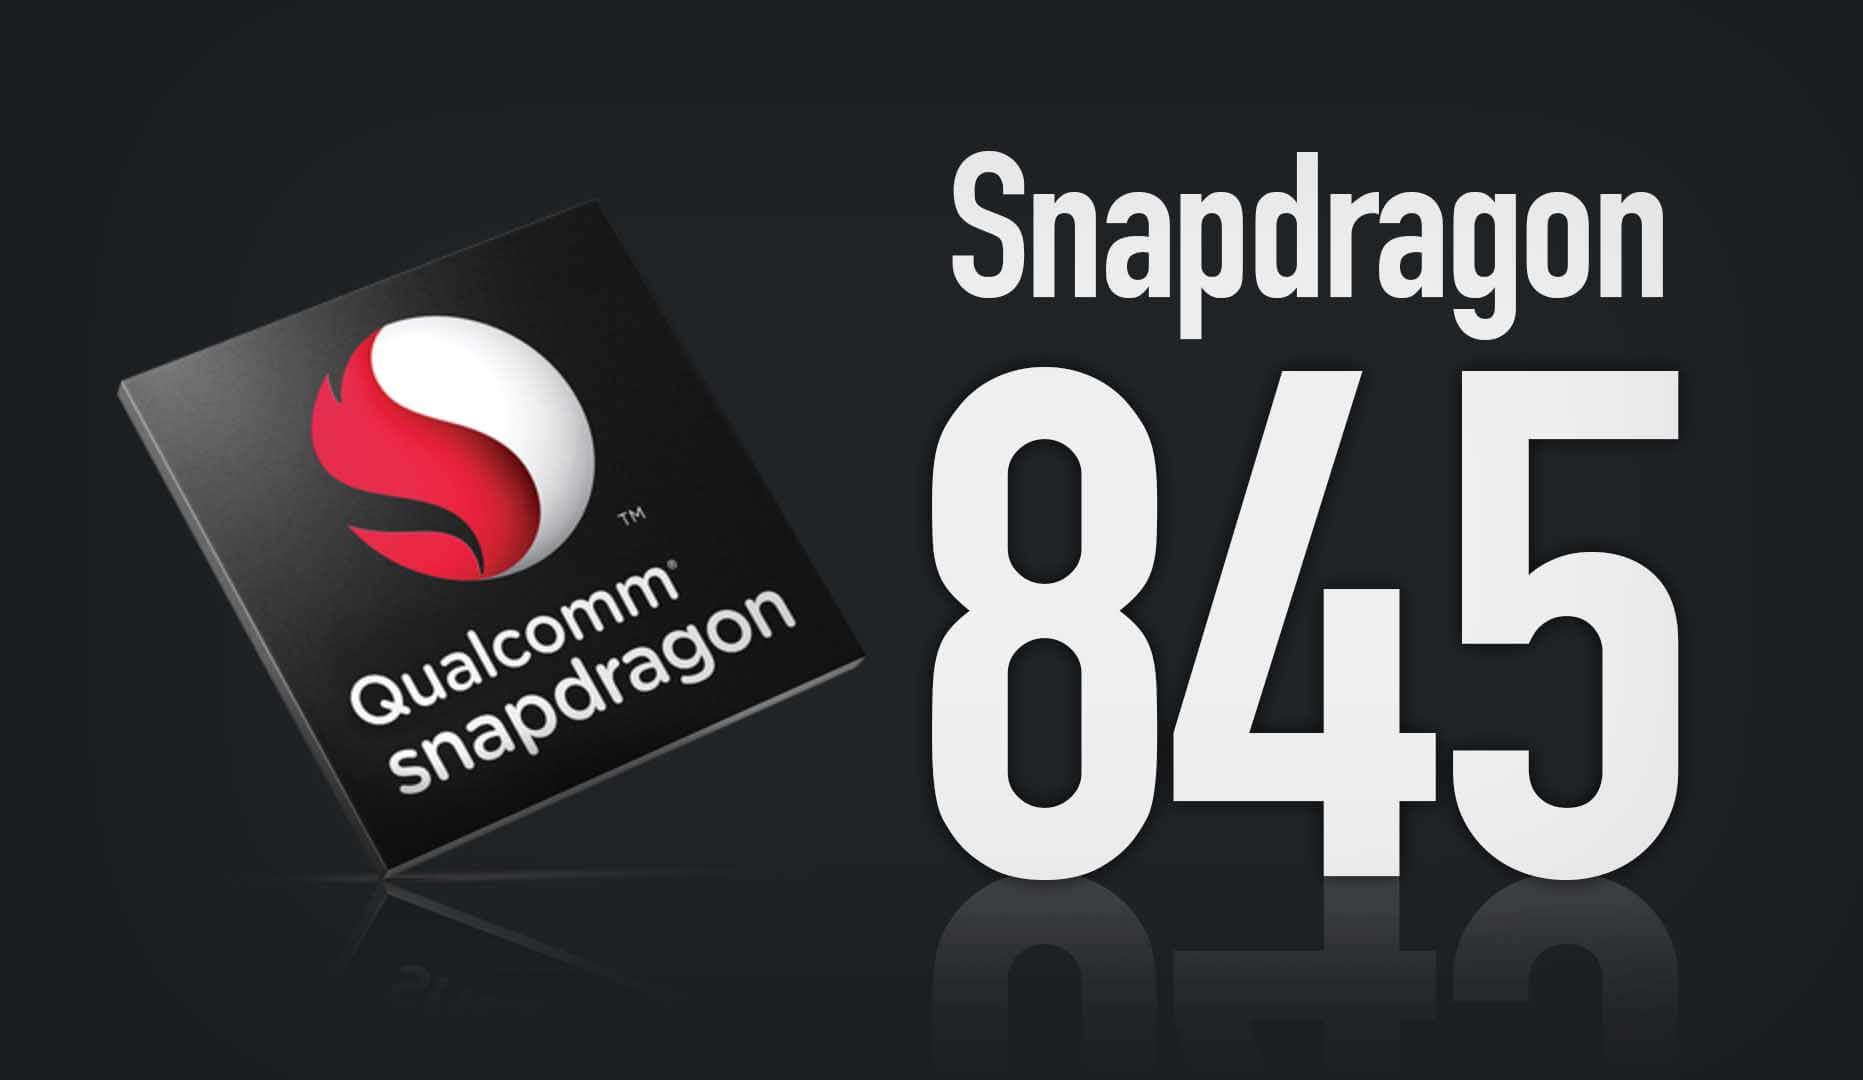 móviles con Snapdragon 845 más baratos